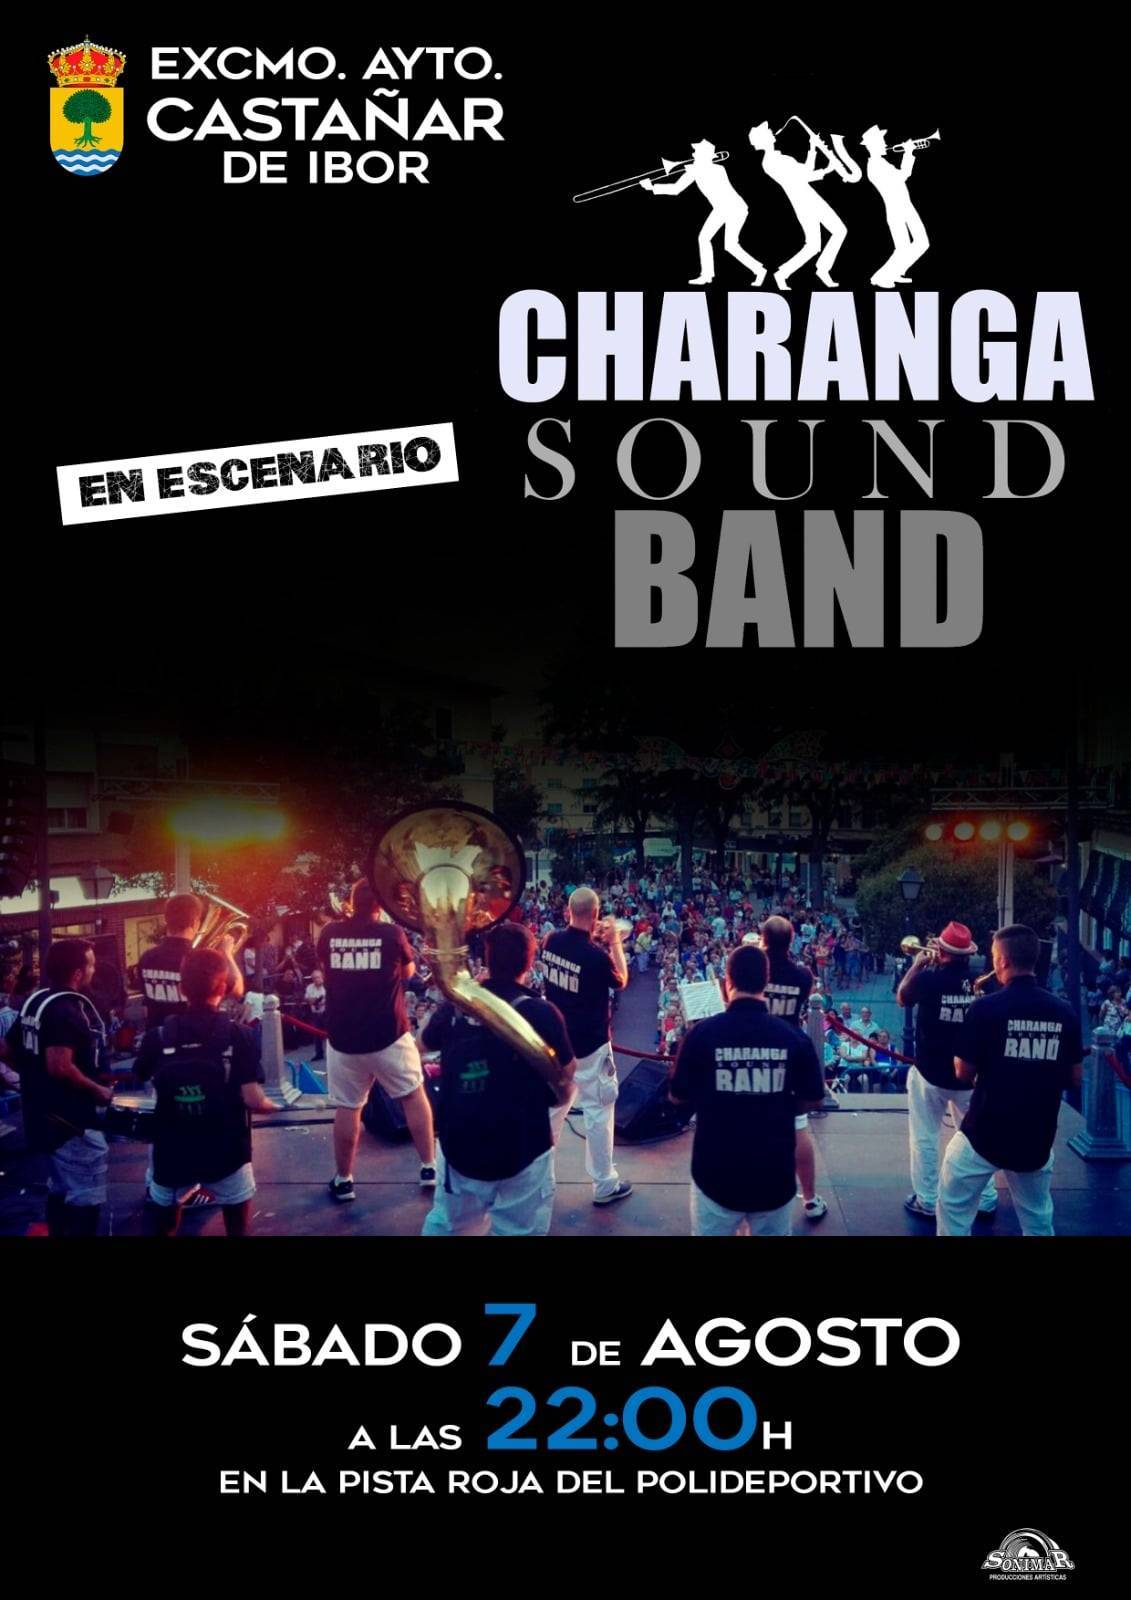 Charanga Sound Band (2021) - Castañar de Ibor (Cáceres)